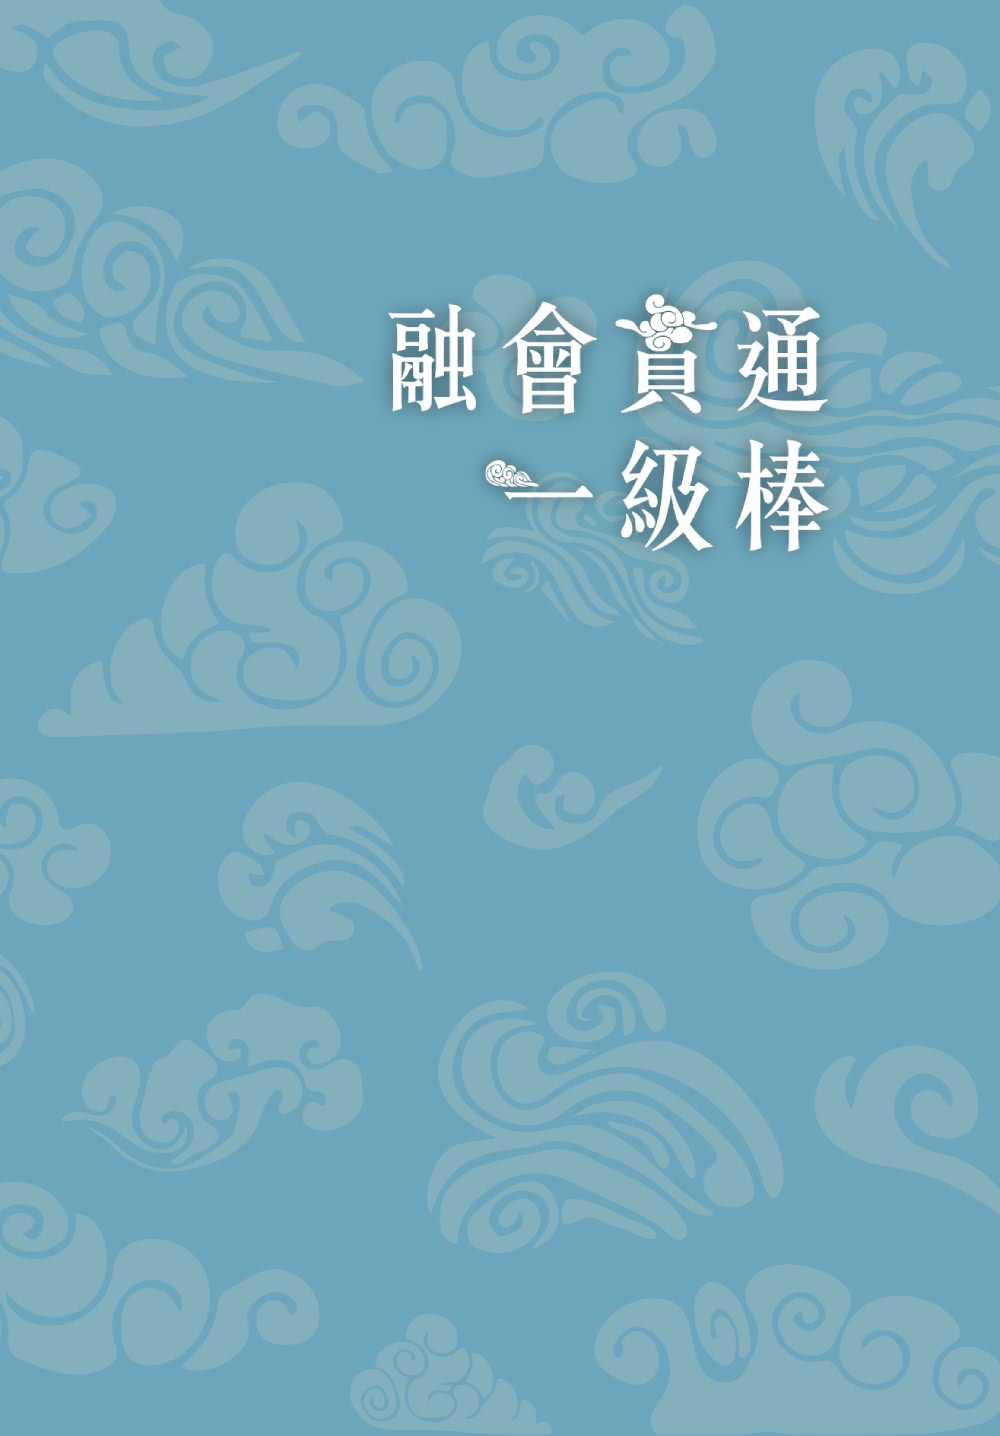 阿亮老師趣說中國歷史1〜4冊系列套書 (贈中國歷史重點學習卡12張)